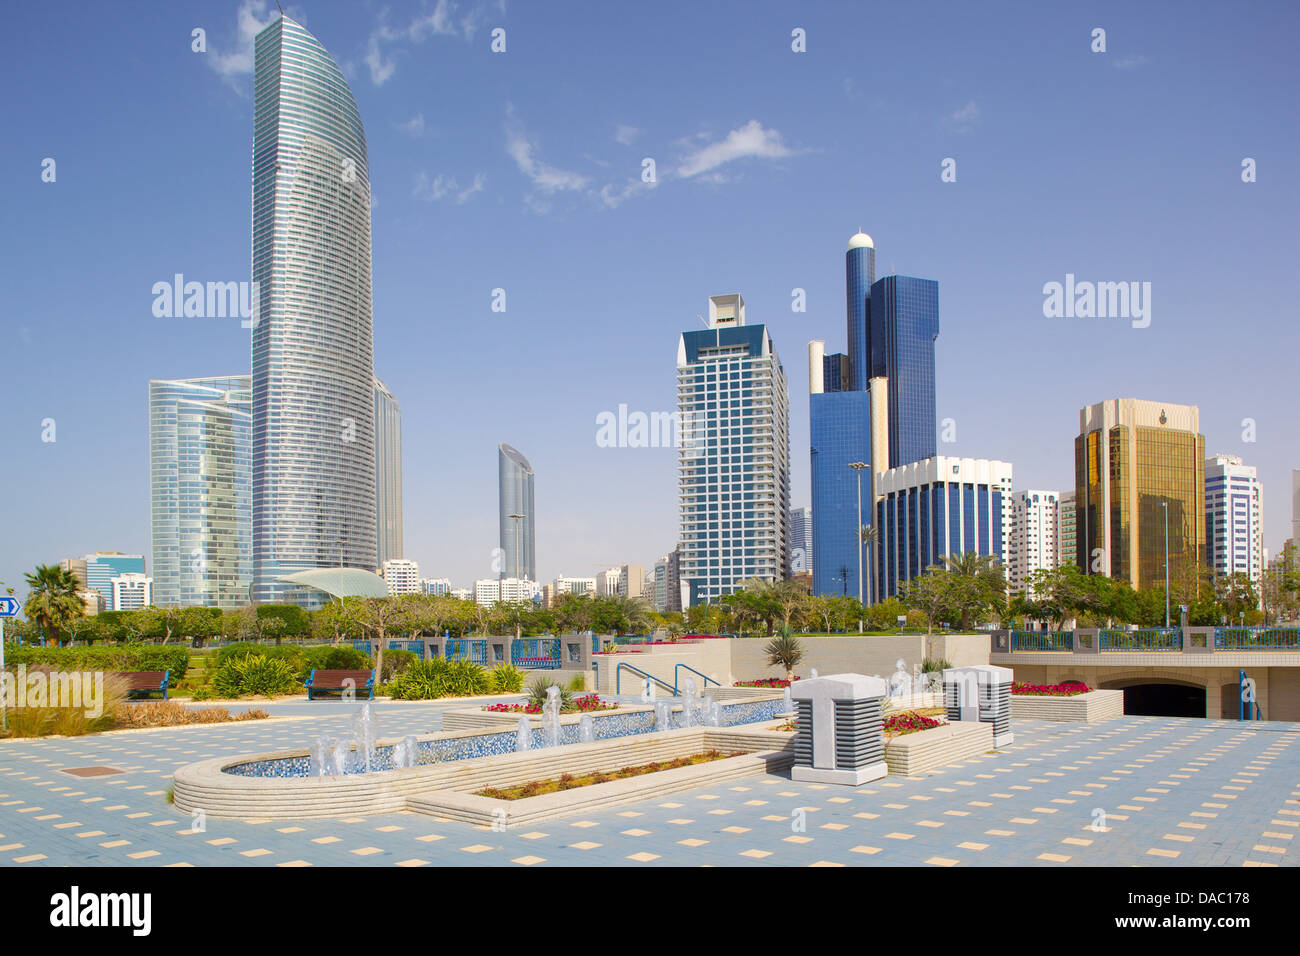 L'architecture contemporaine le long de la Corniche, Abu Dhabi, Émirats arabes unis, Moyen Orient Banque D'Images